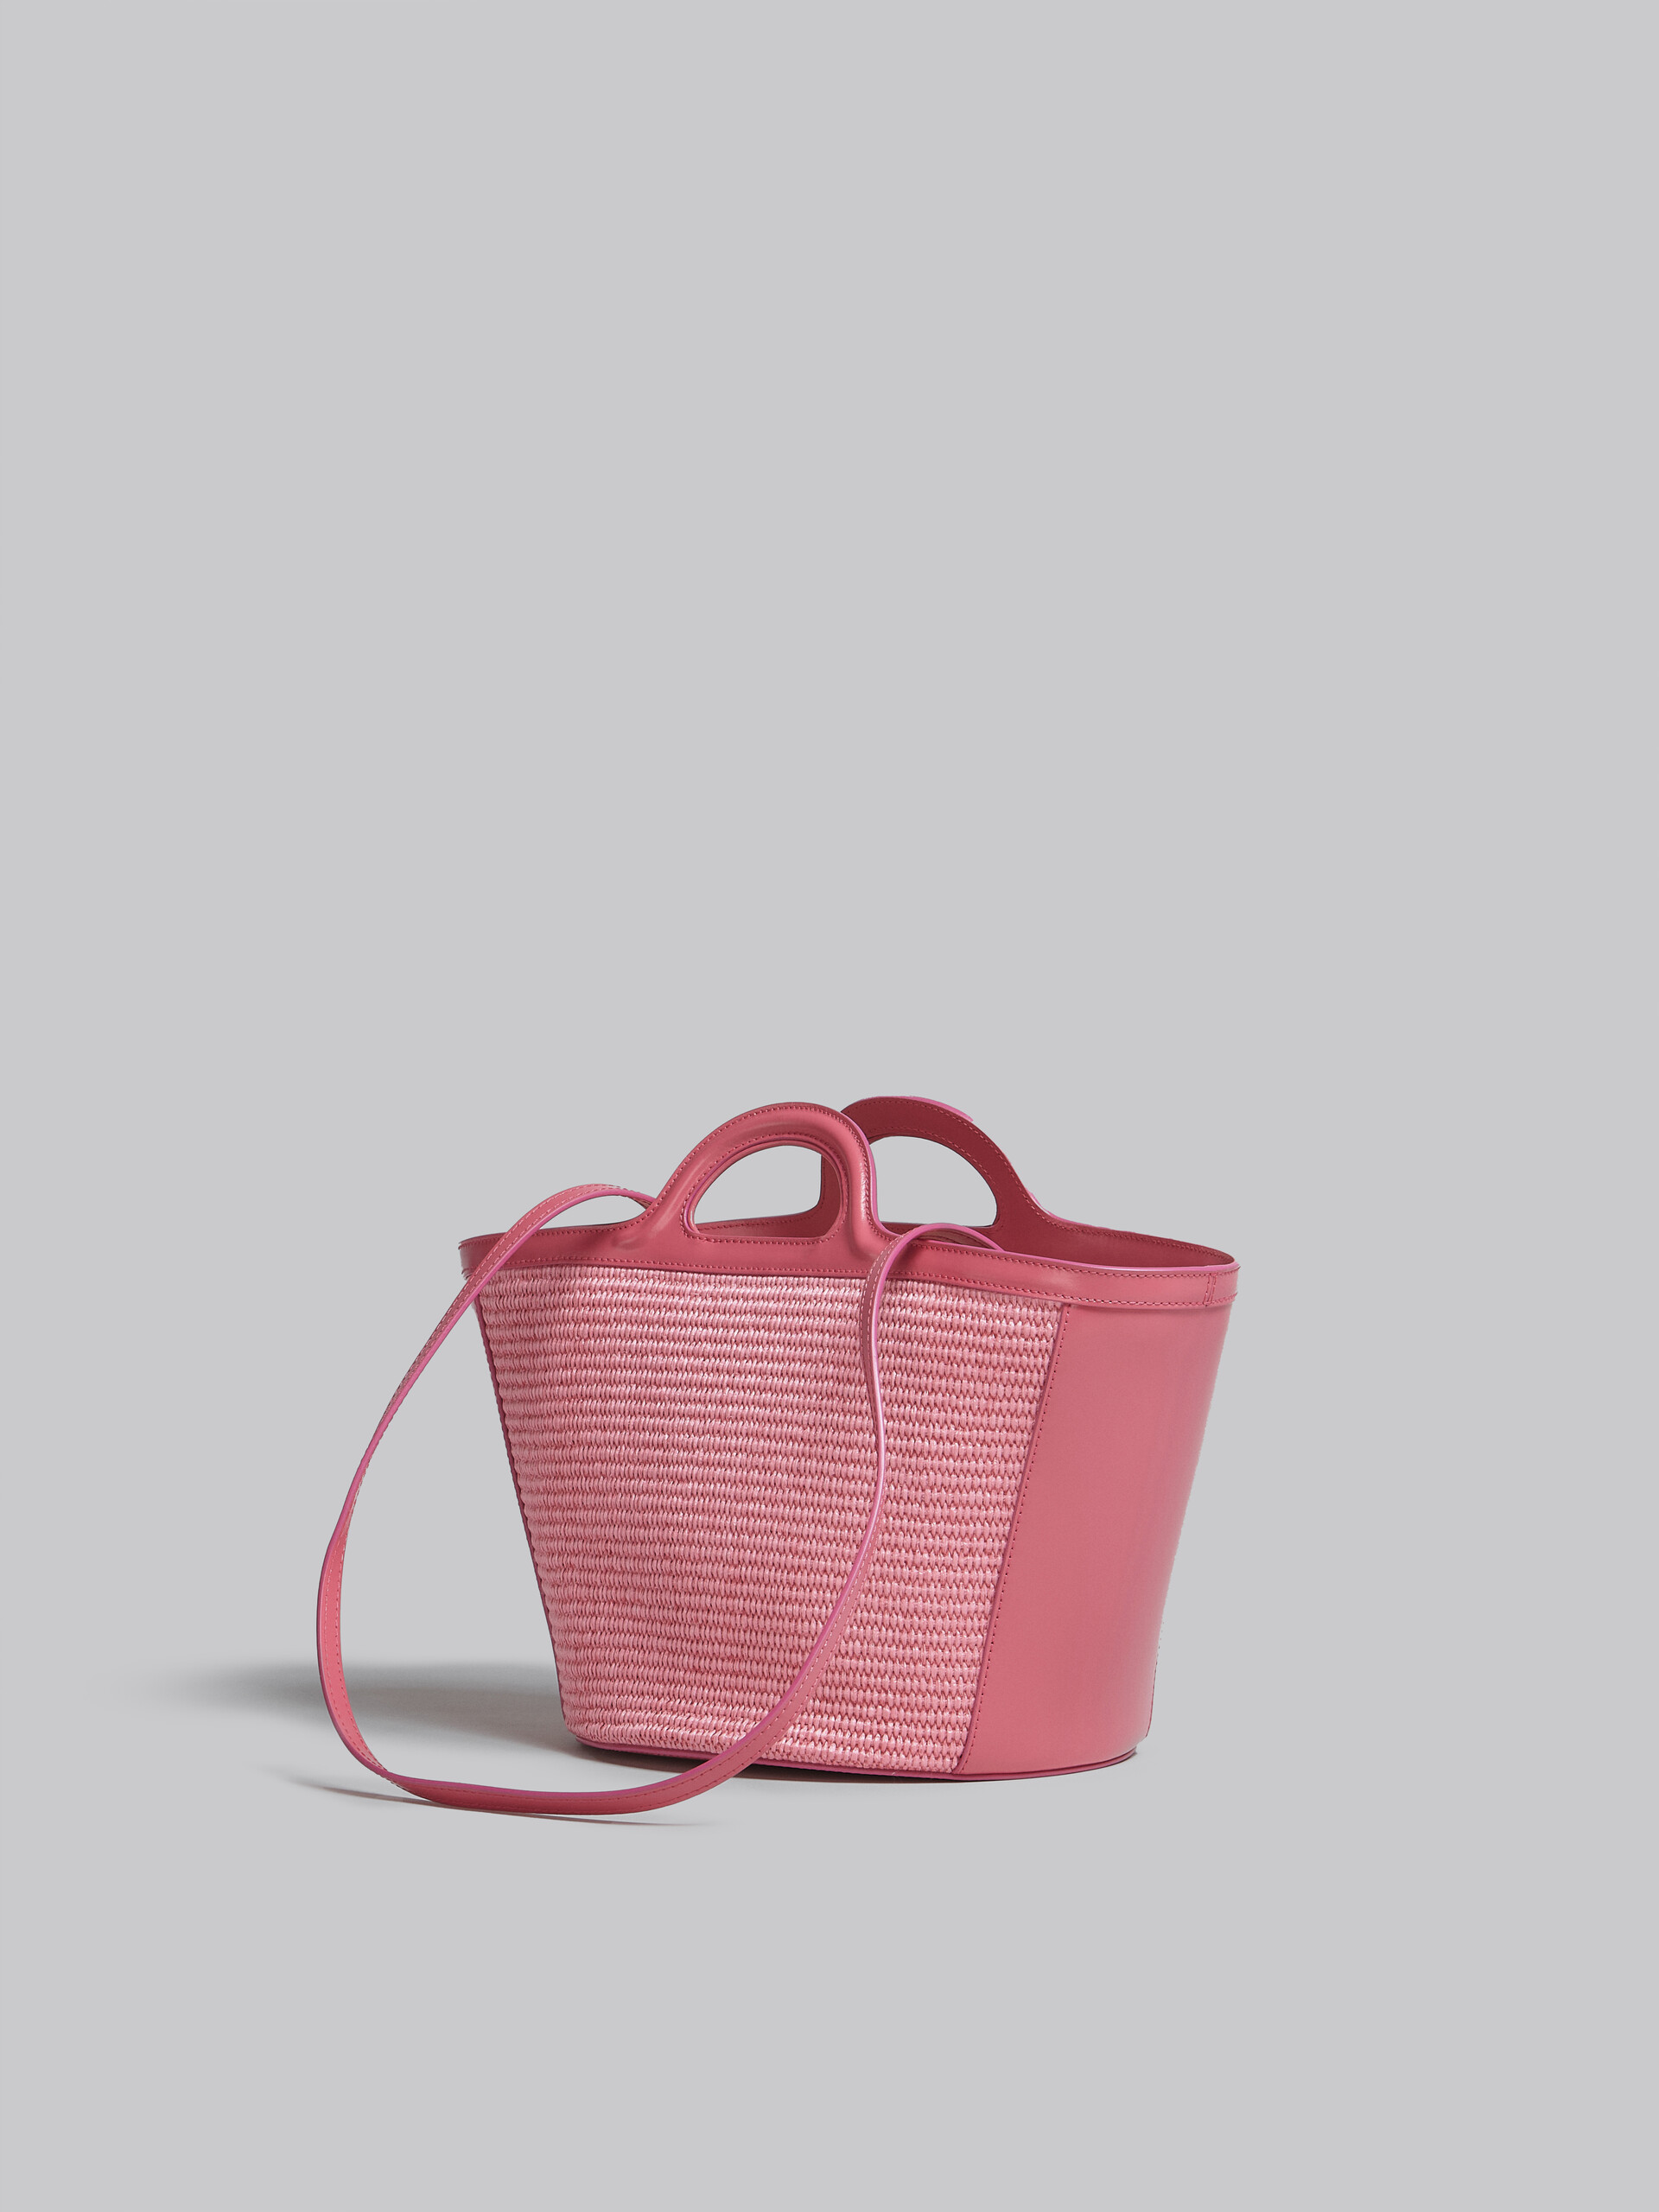 Bolso pequeño TROPICALIA de piel rosa y rafia - Bolsos de mano - Image 3